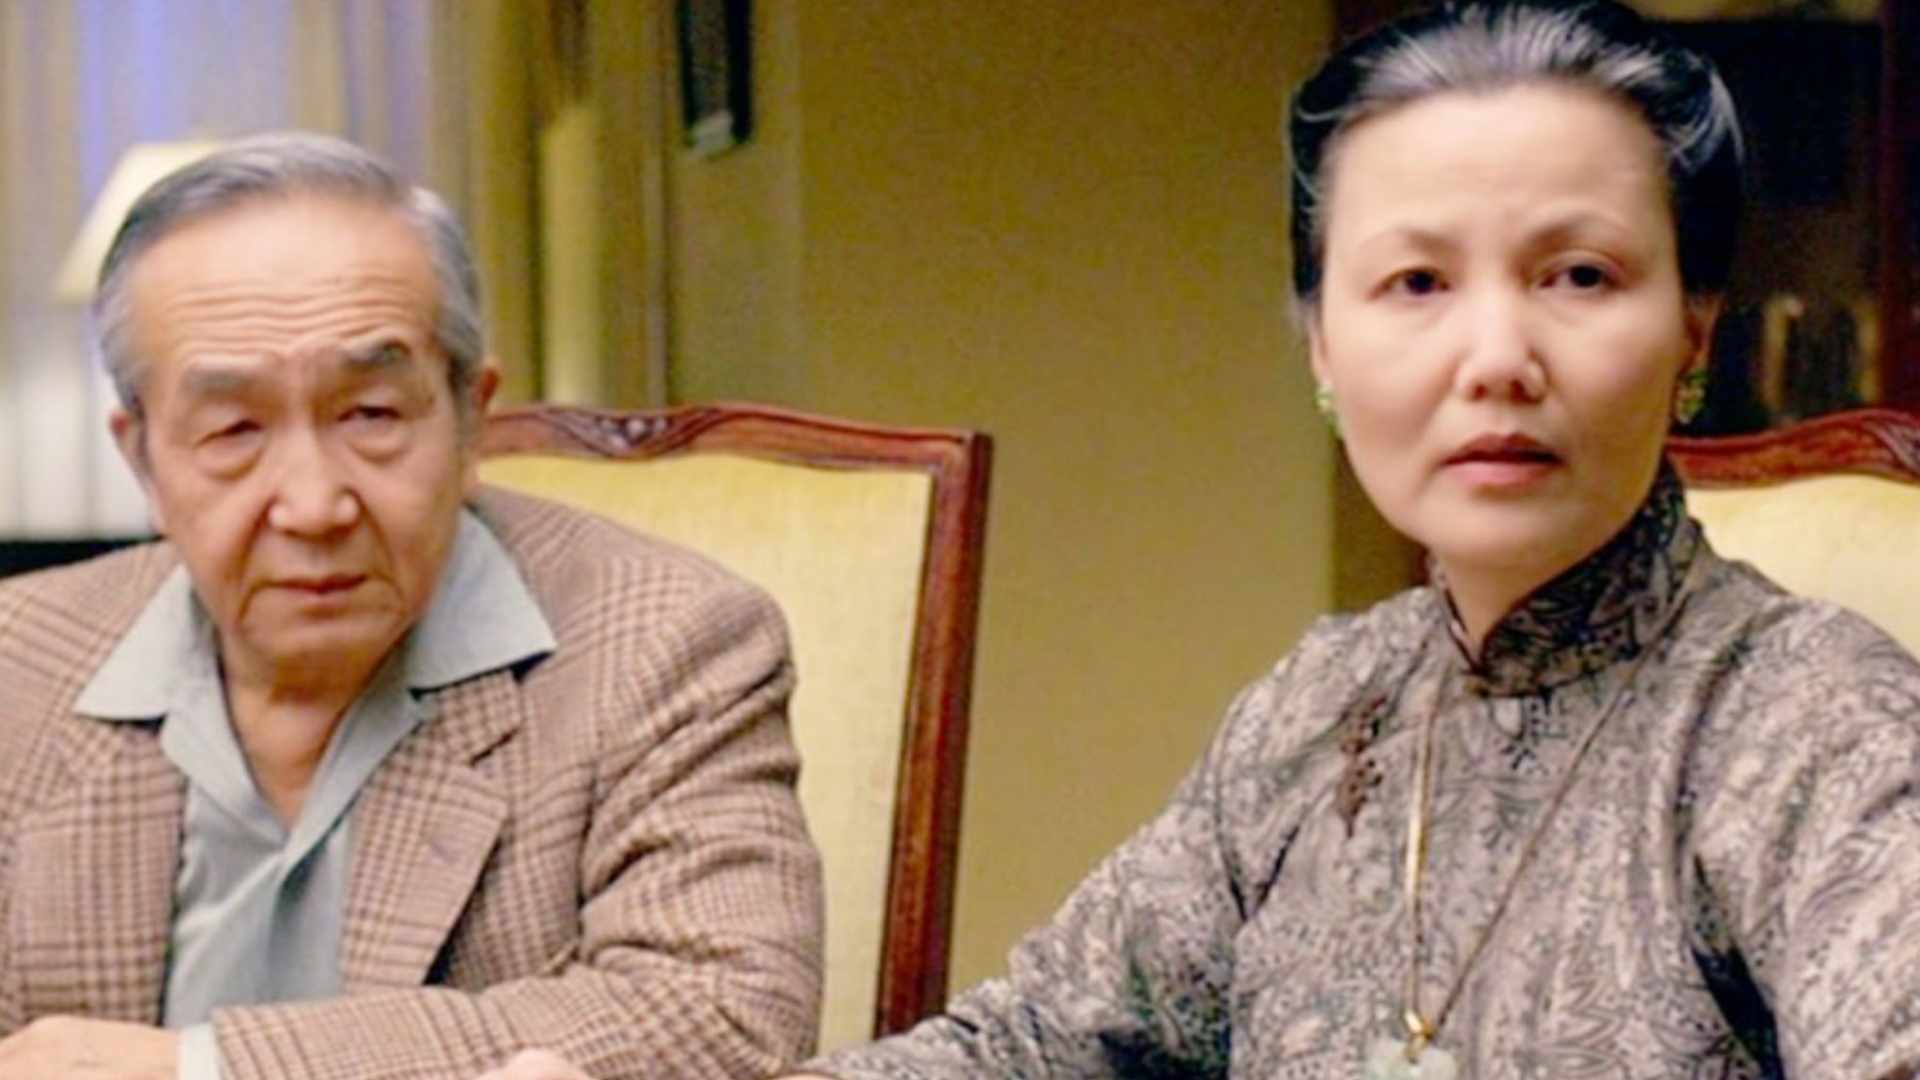 یکی از مادران چینی به همراه همسرش در فیلم The Joy Luck Club